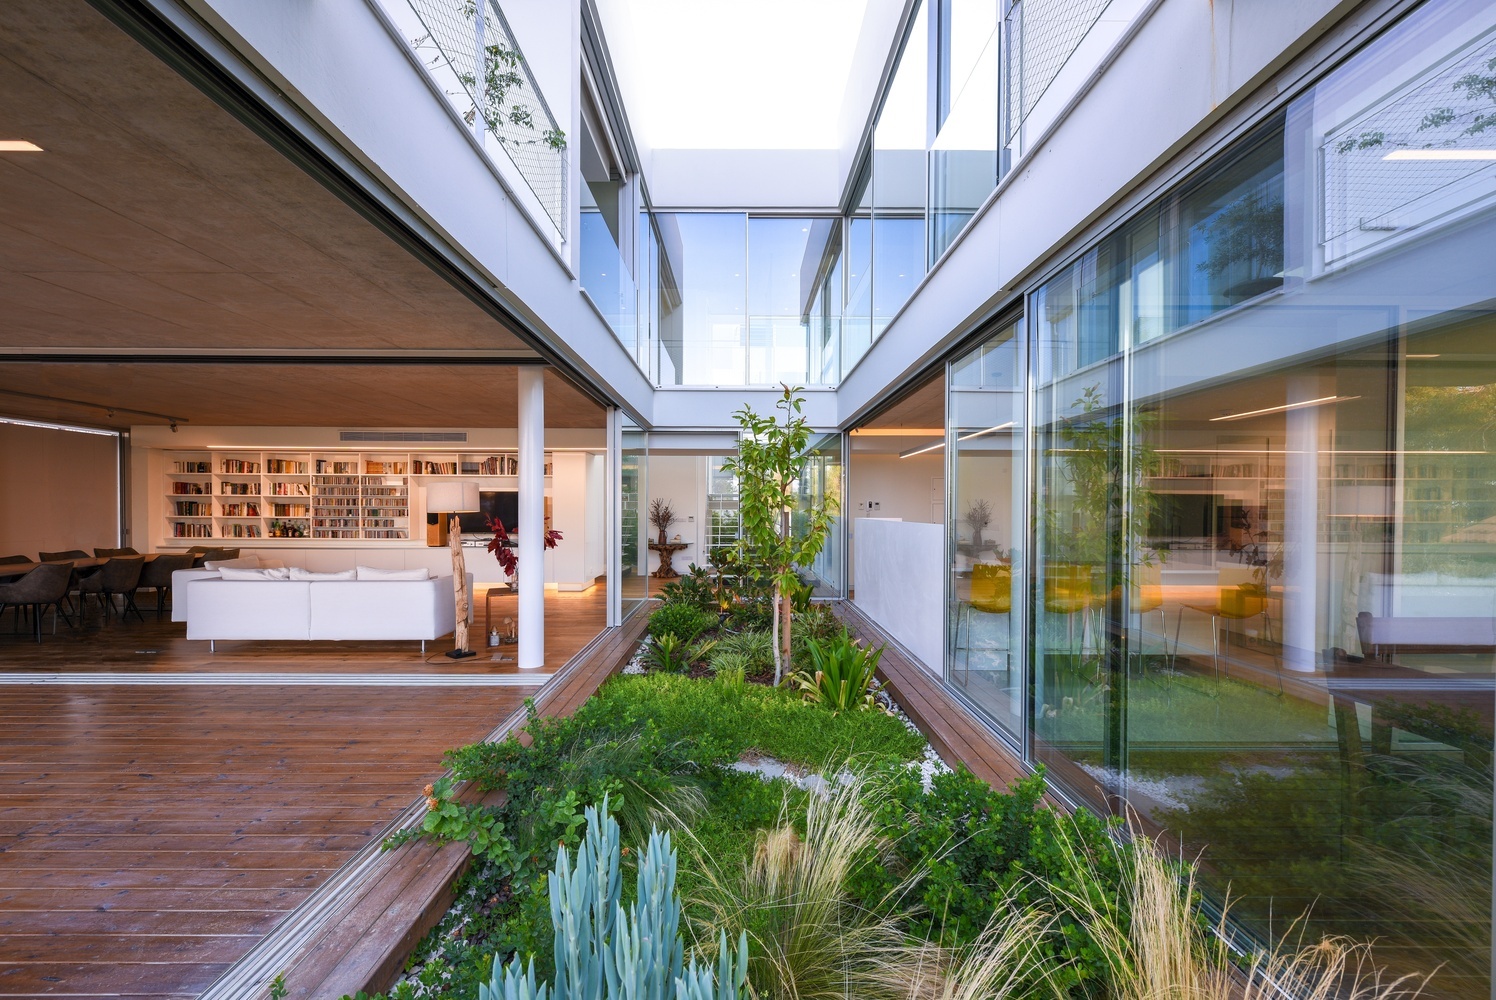 Cách kết hợp sử dụng cây xanh trong thiết kế nhà ở